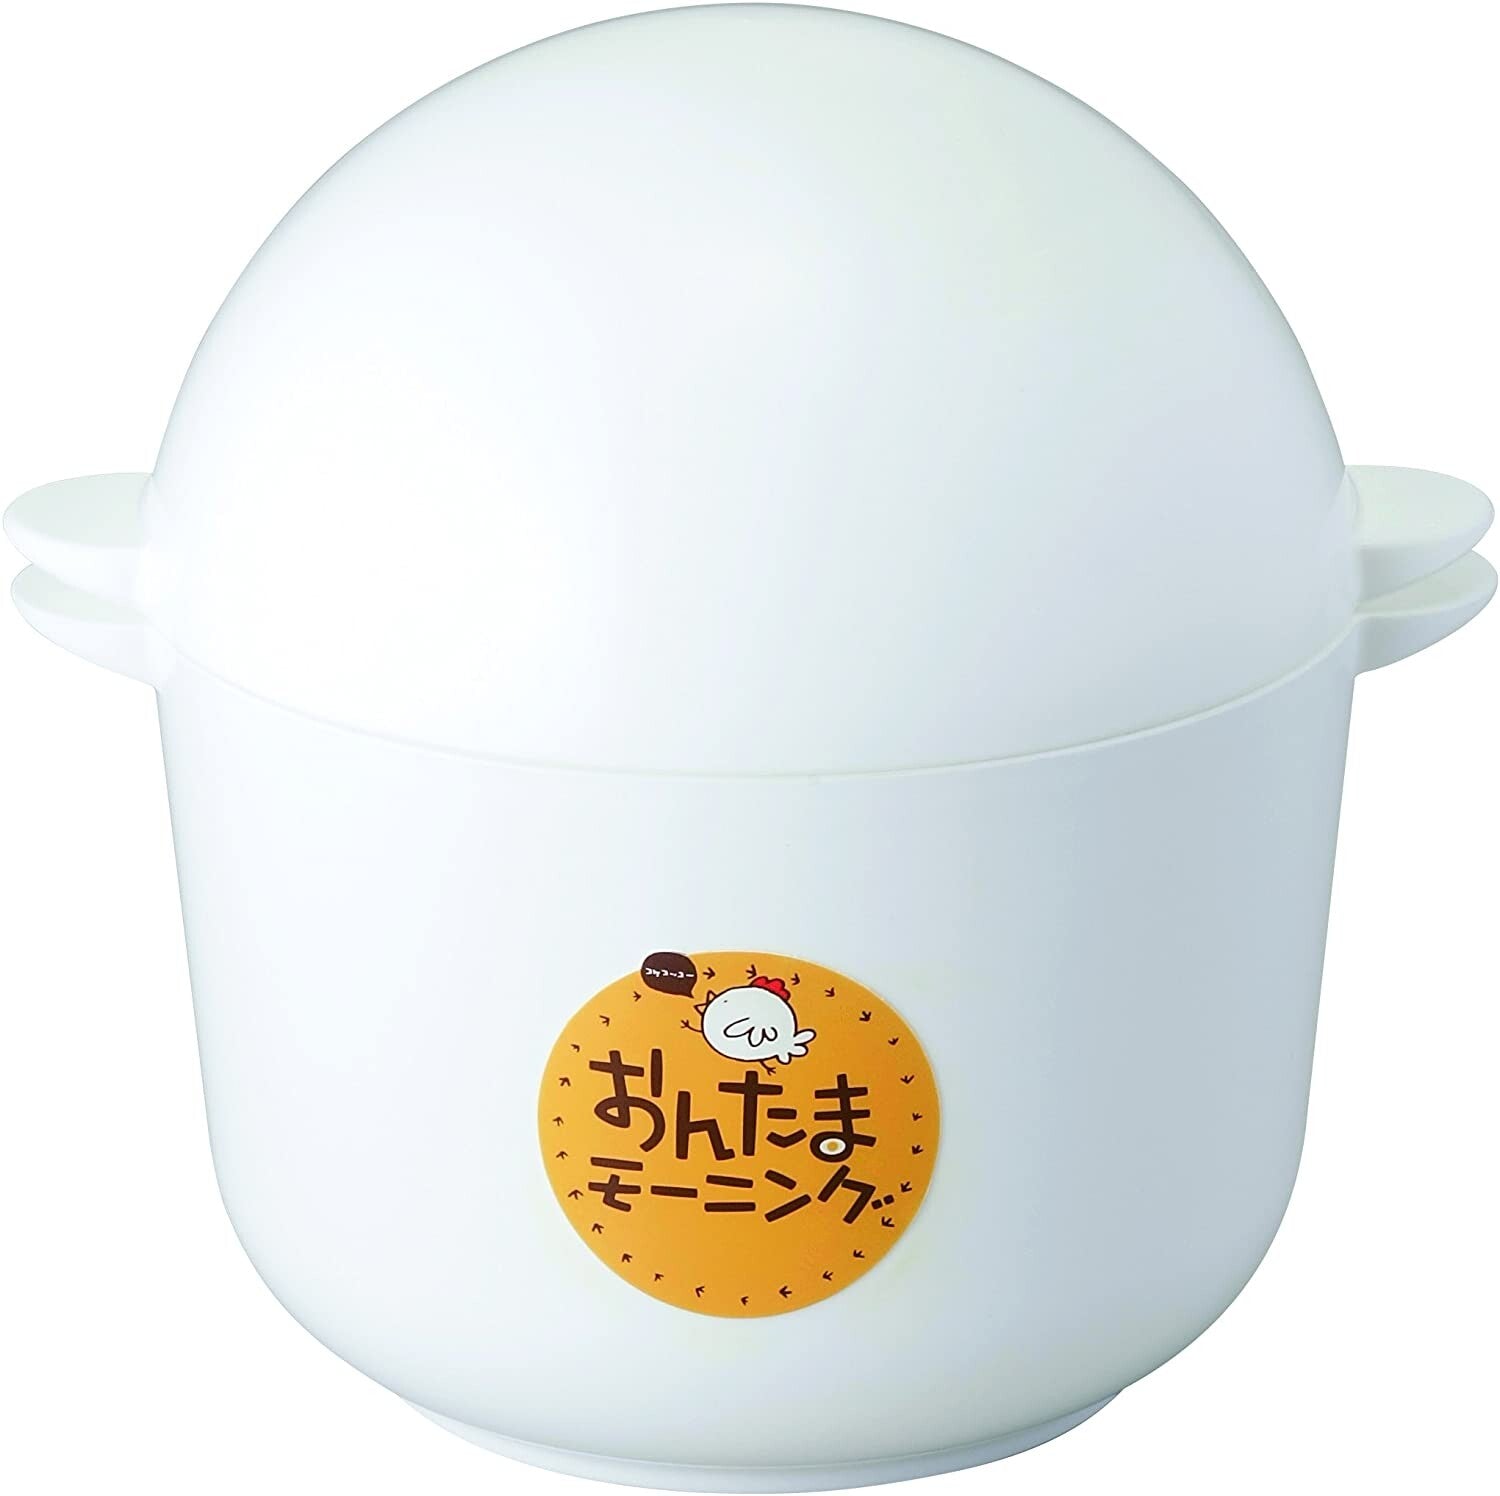 【預購】日本製 On-tama Morning Yamaken Kogyo Onsen 煮蛋器 - Cnjpkitchen ❤️ 🇯🇵日本廚具 家居生活雜貨店